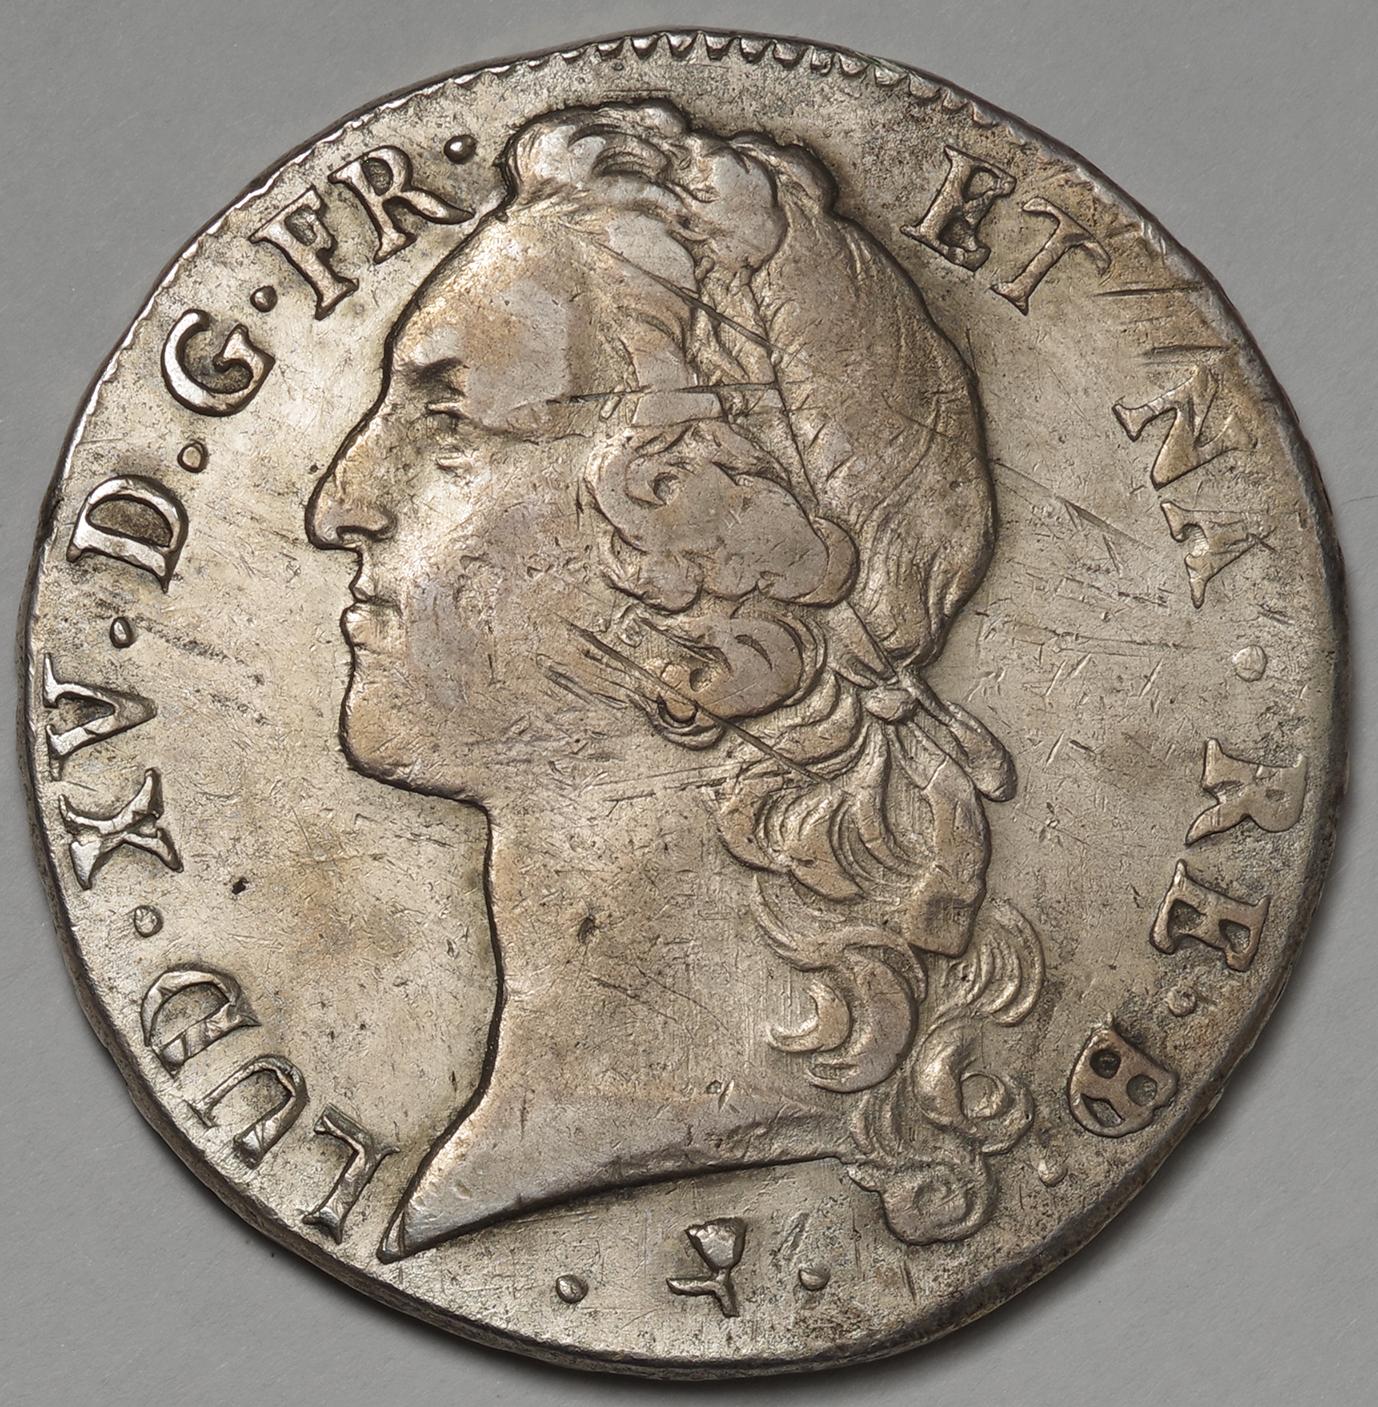 フランス ルイ15世 (1715-1774)エキュ銀貨 - 旧貨幣/金貨/銀貨/記念硬貨